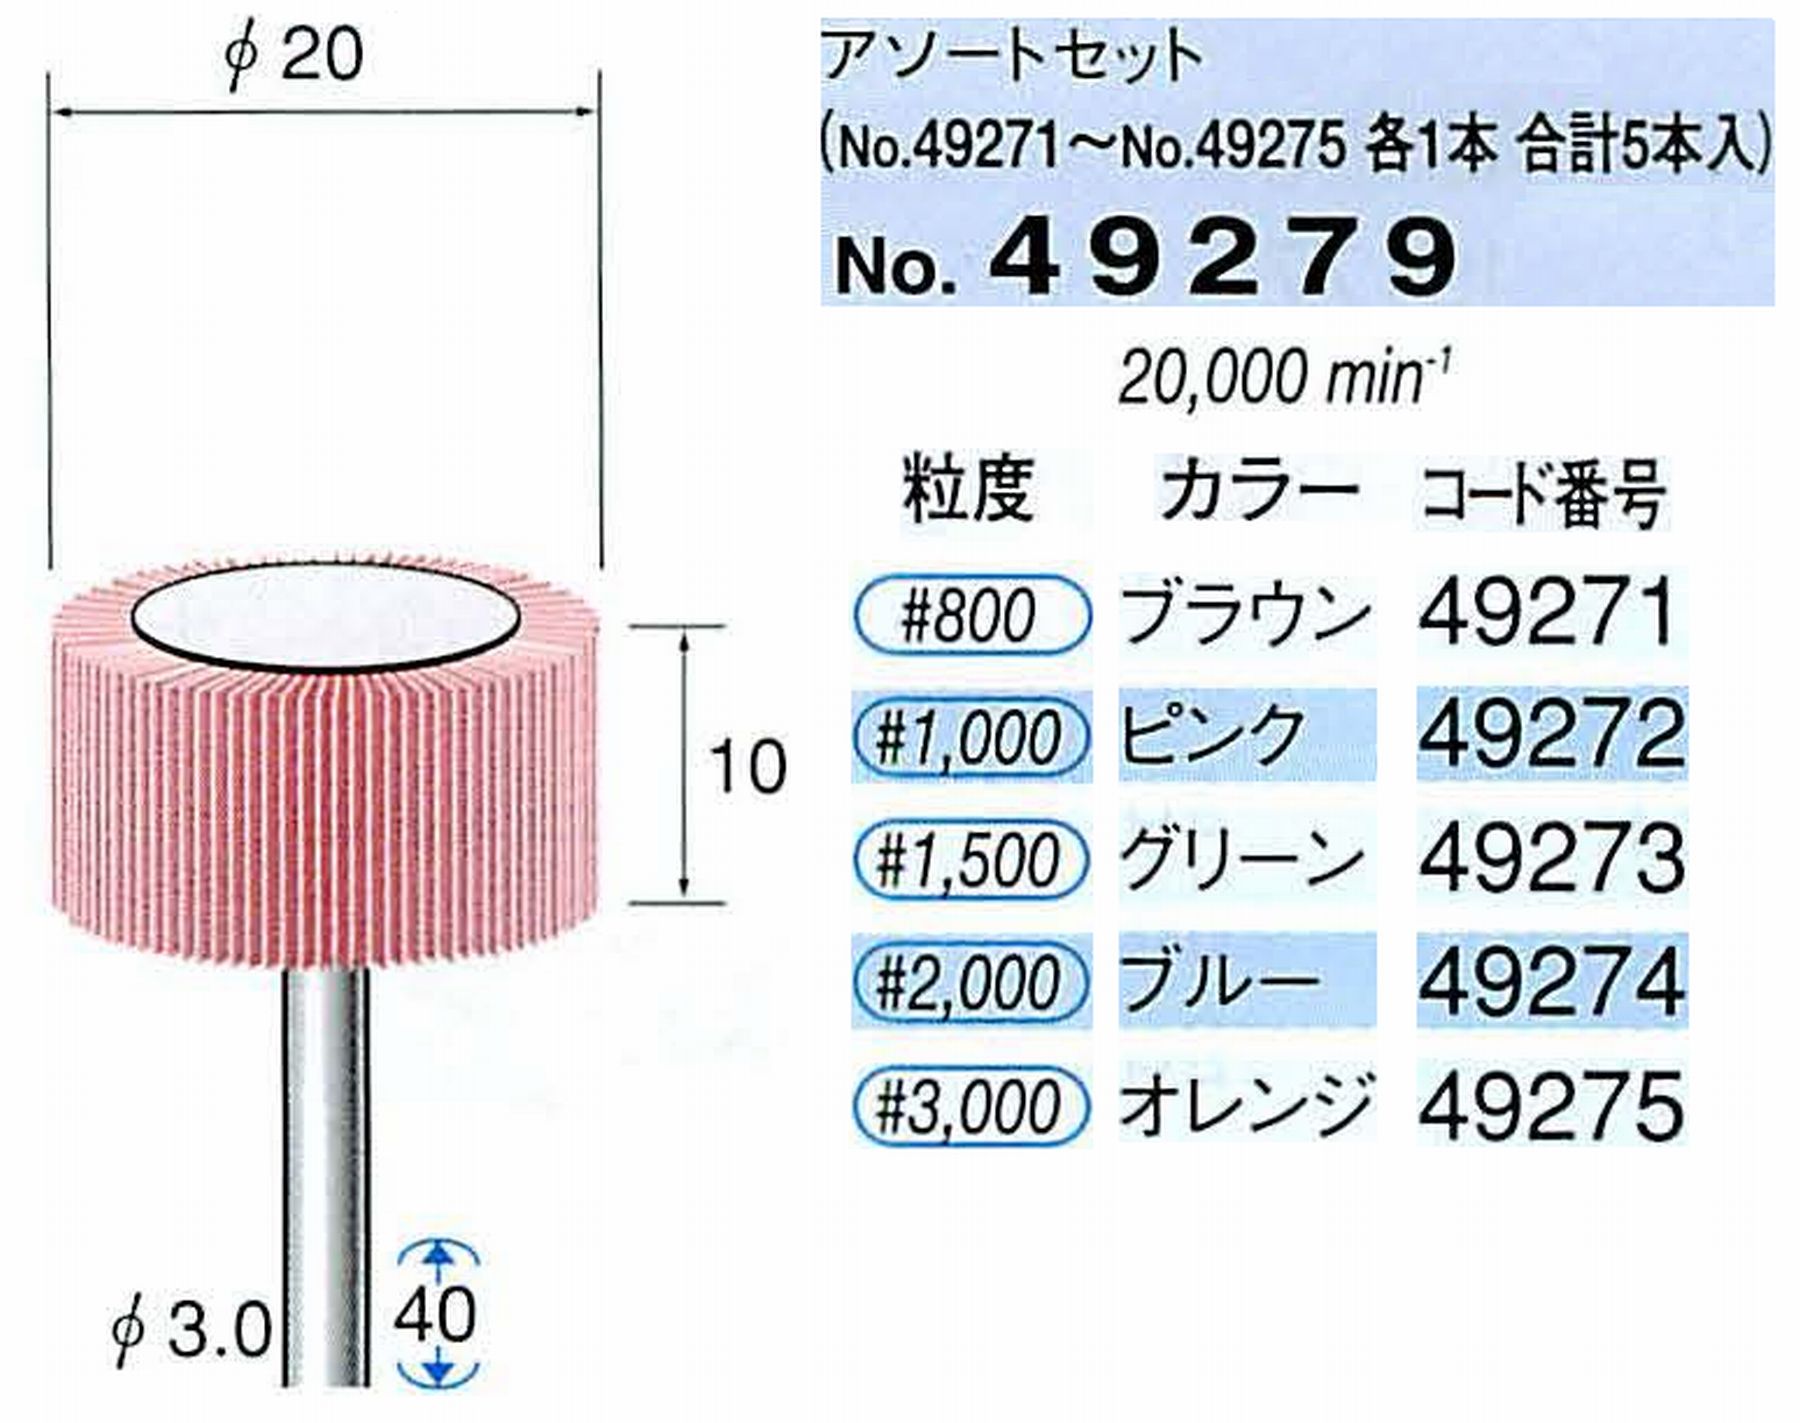 ナカニシ/NAKANISHI ファイン フラップサンダーアソートセット 軸径(シャンク)φ3.0mm 49279